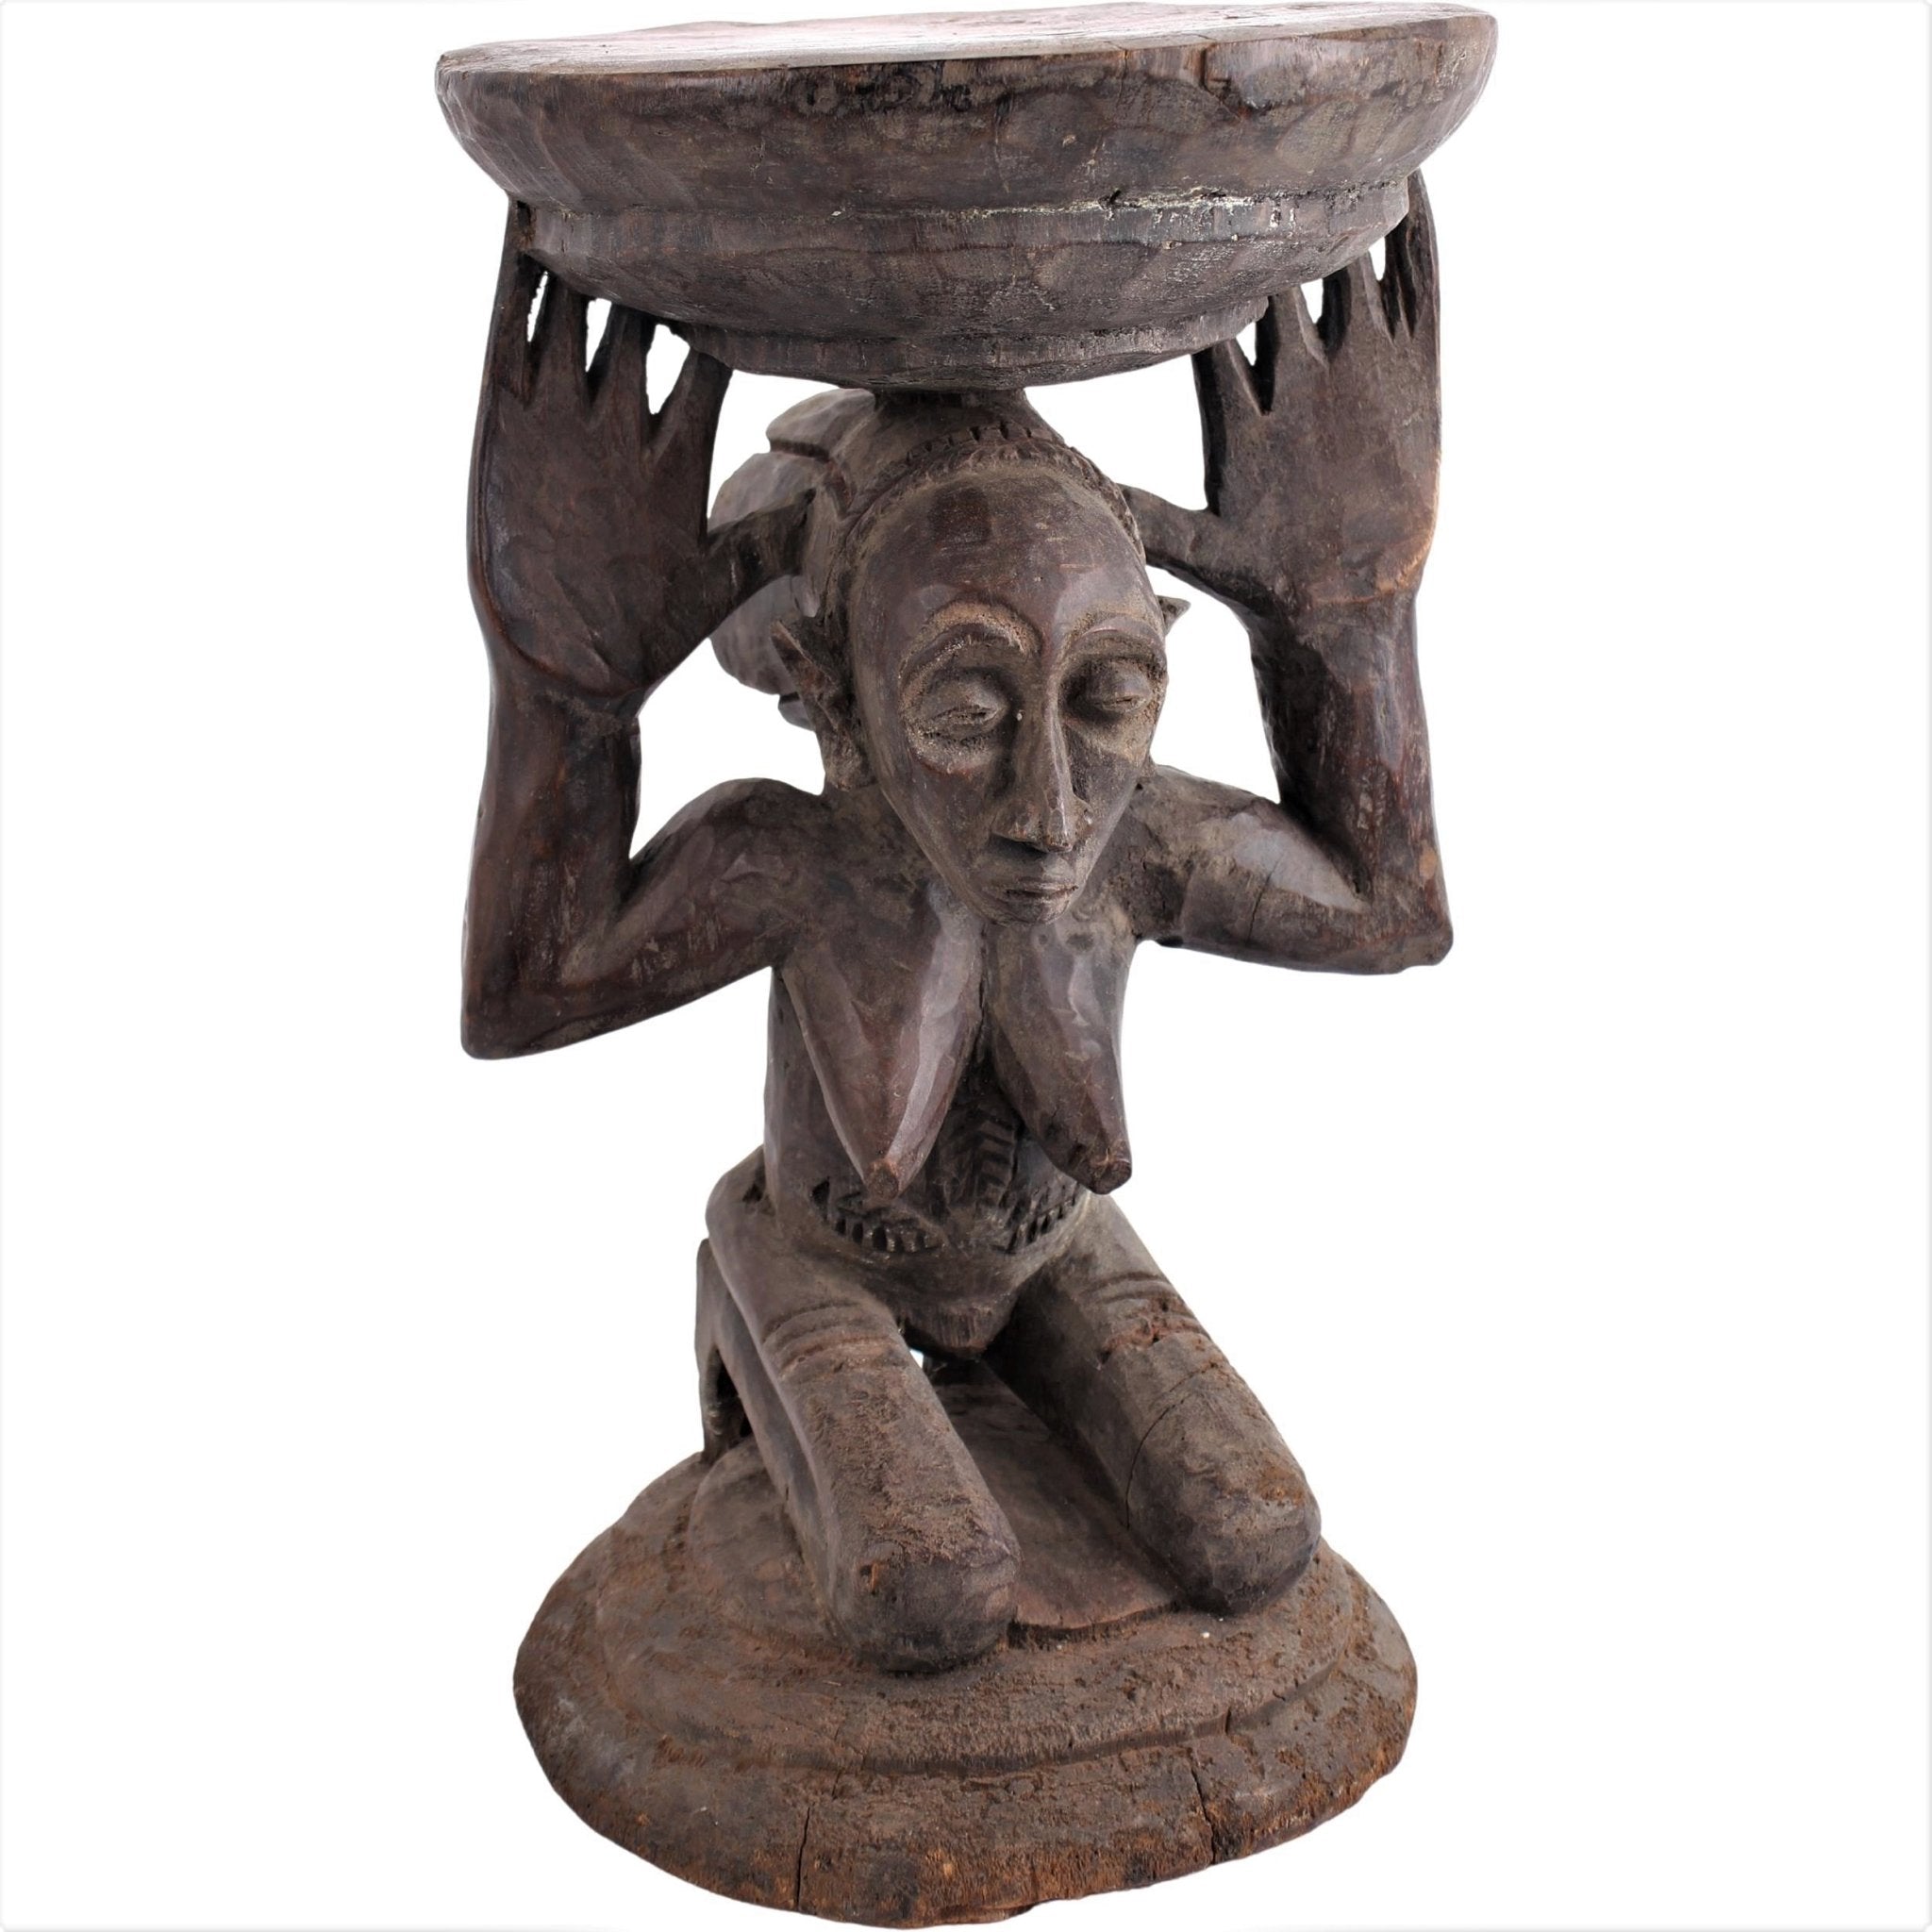 Luba/Baluba Tribe Collection - African Angel Art